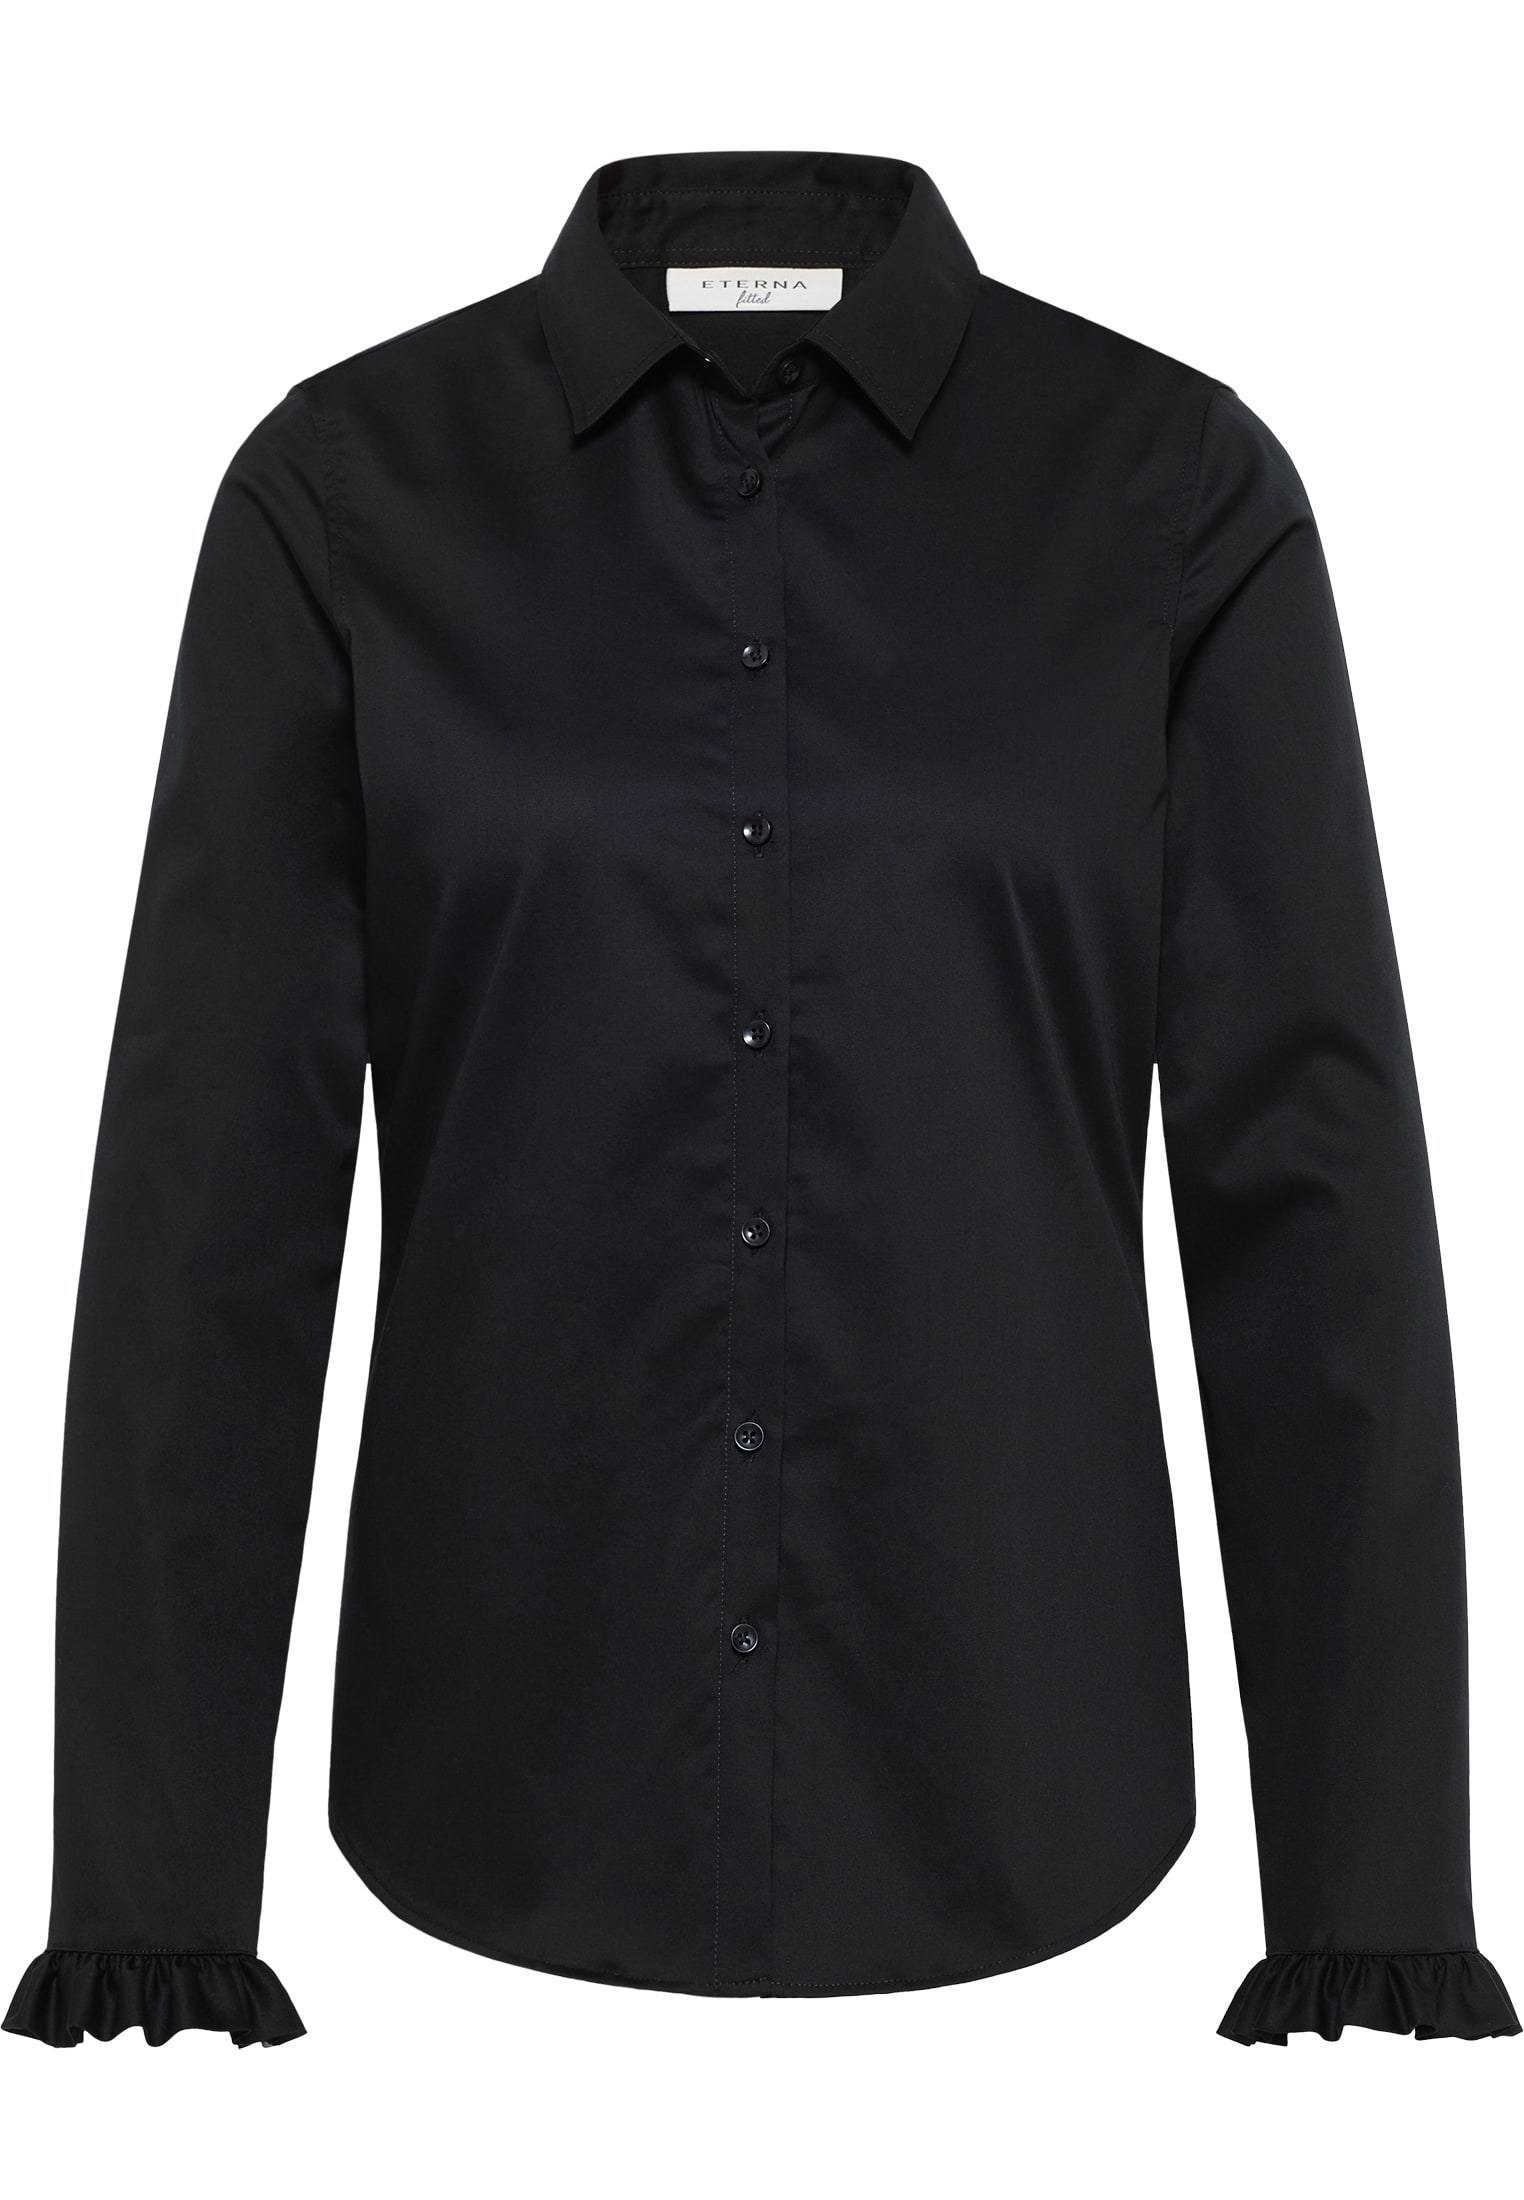 40 Langarm | Satin schwarz schwarz | | in Bluse Shirt 2BL04181-03-91-40-1/1 | unifarben